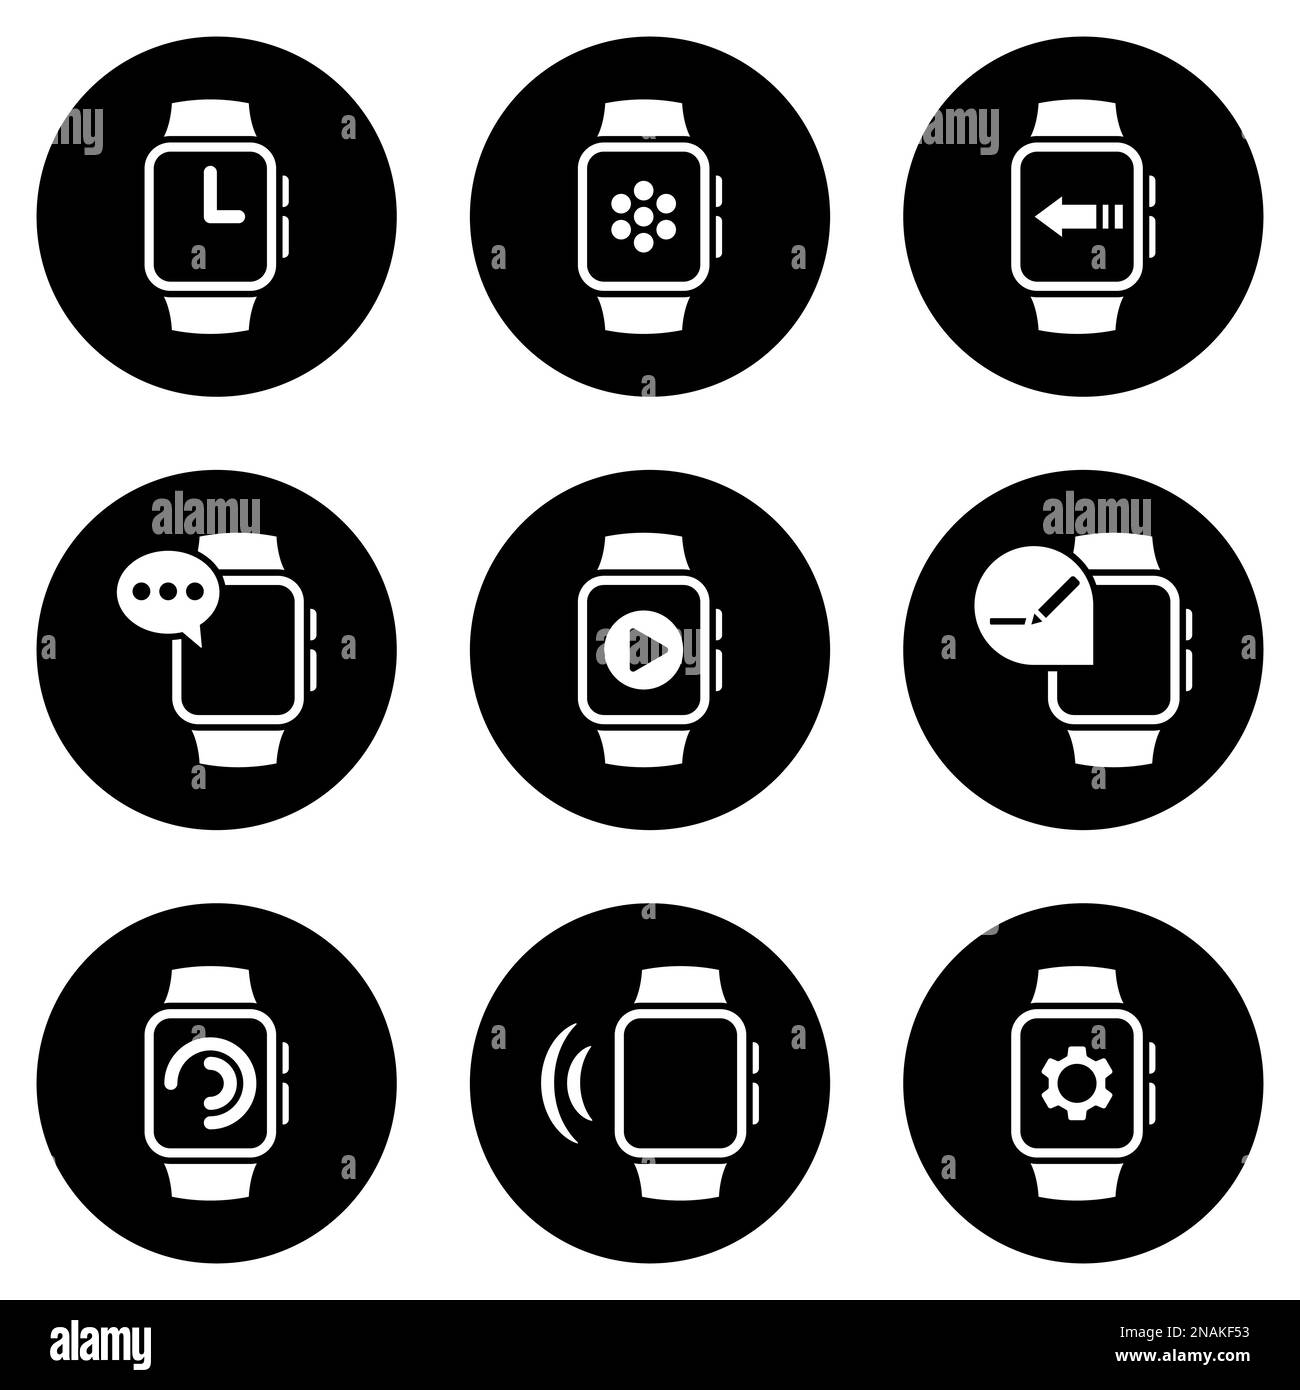 Insieme di icone semplici su un tema orologio intelligente, vettore, disegno, collezione, piatto, segno, simbolo, elemento, oggetto, illustrazione, isolato. Sfondo bianco Illustrazione Vettoriale